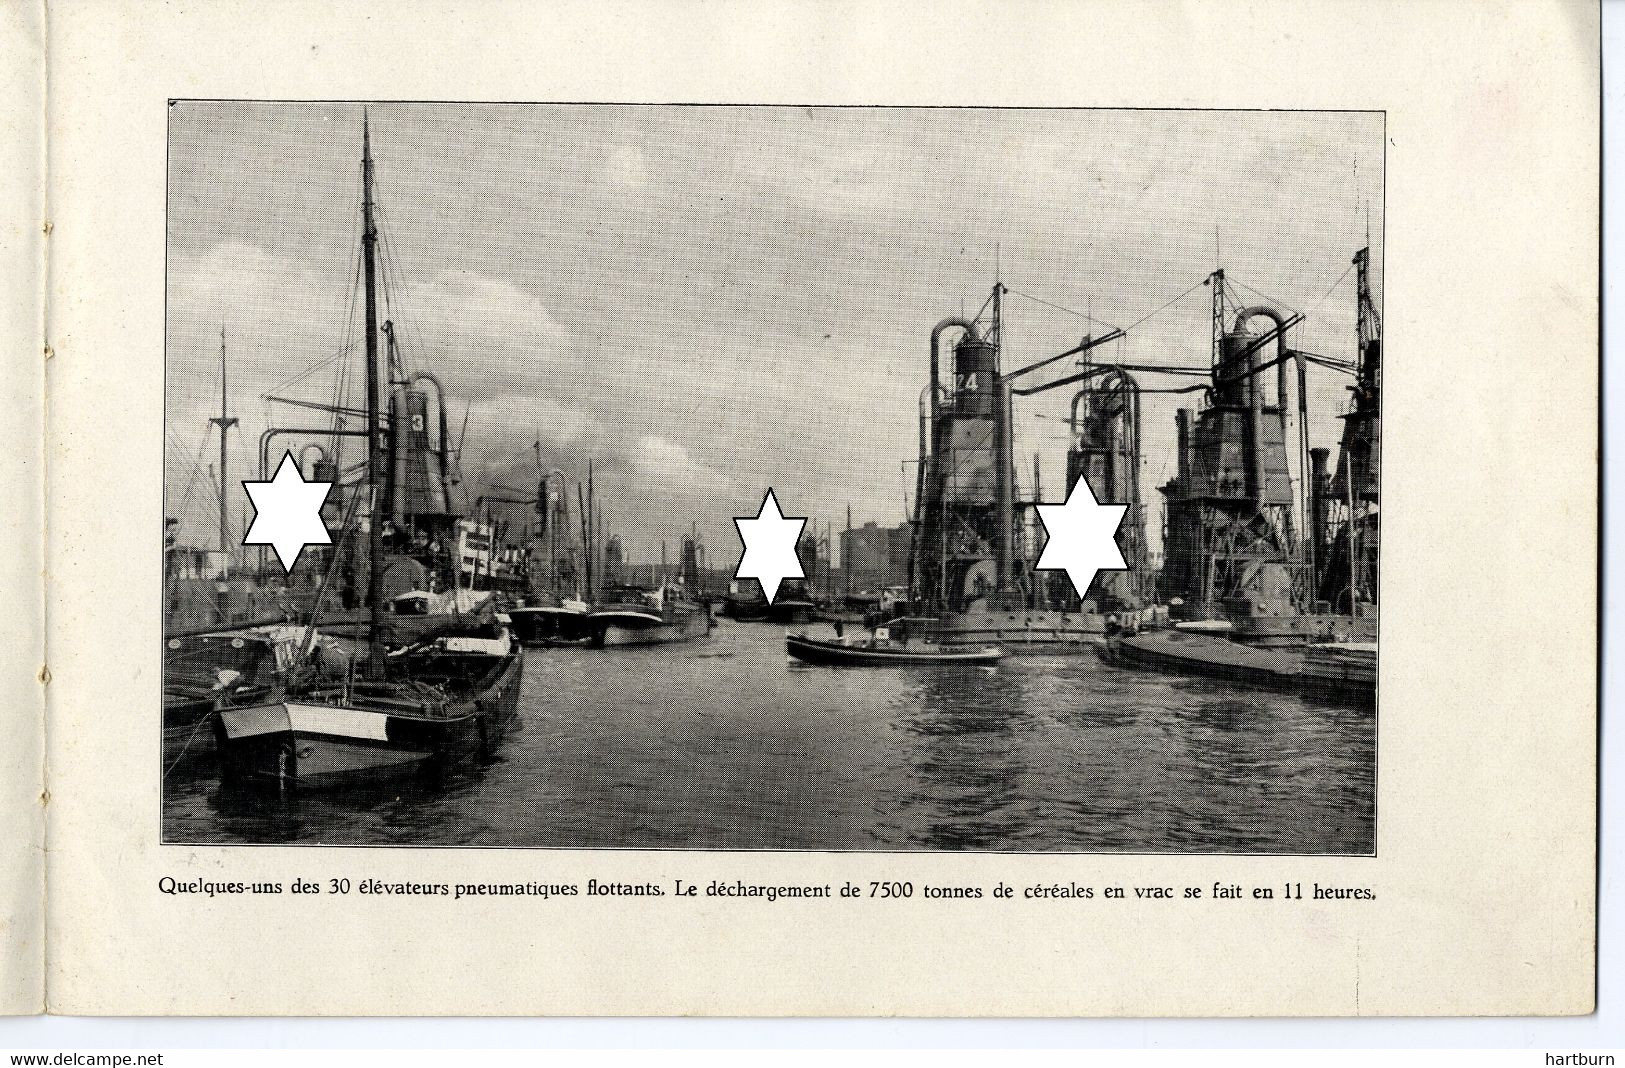 De haven Rotterdam. Aangeboden door de gemeente Rotterdam, Maashaven, Waalhaven, Koningshaven ± 1930 (D-25)